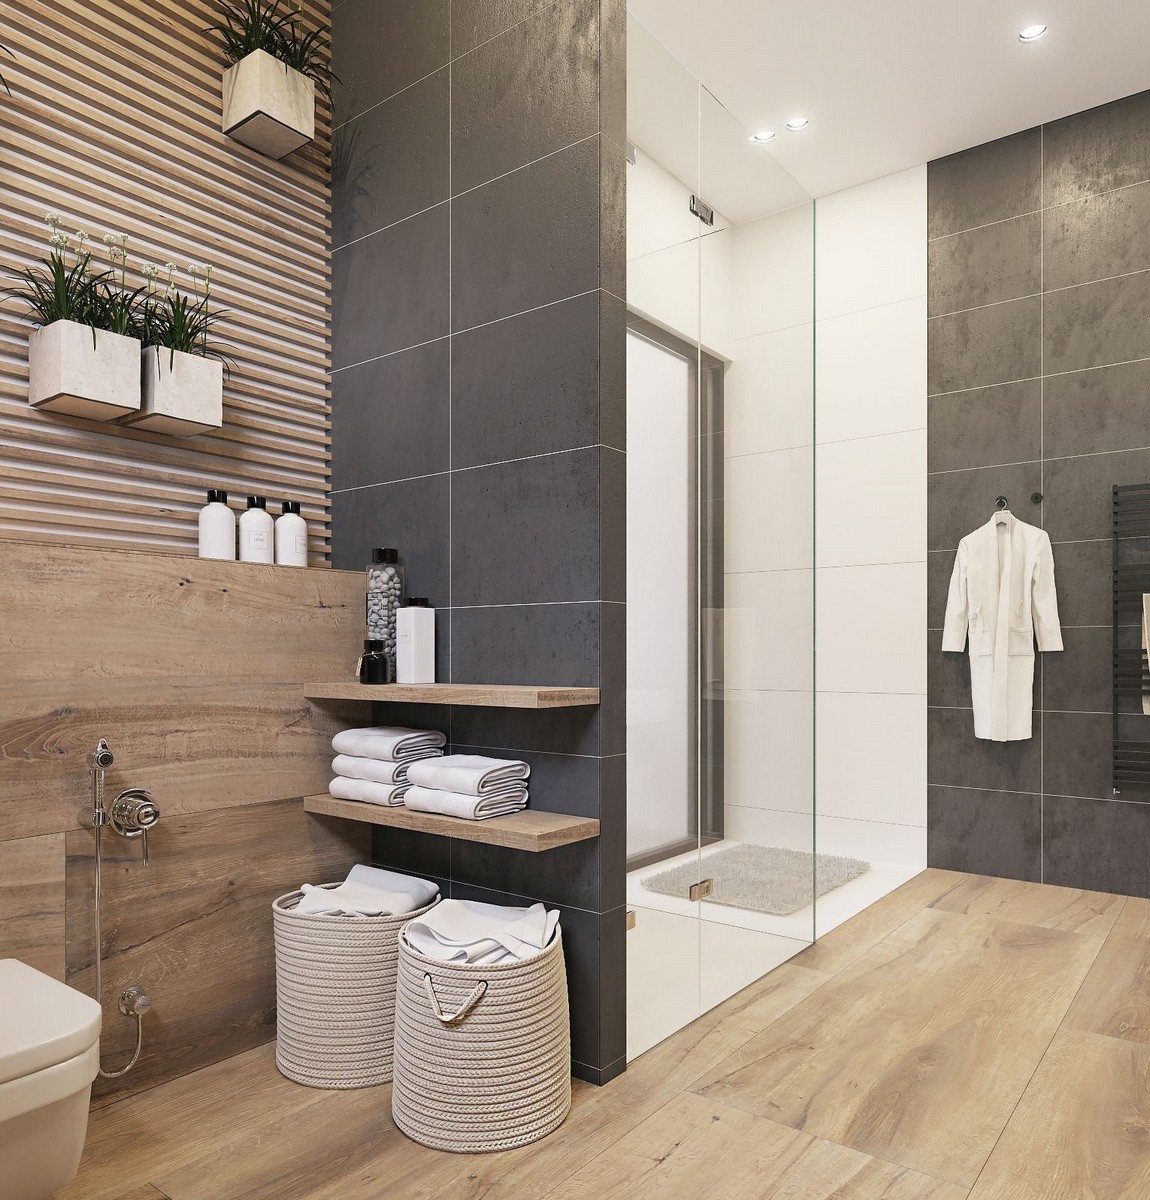 Salle de bain gris et bois : idées et astuces pour une ...